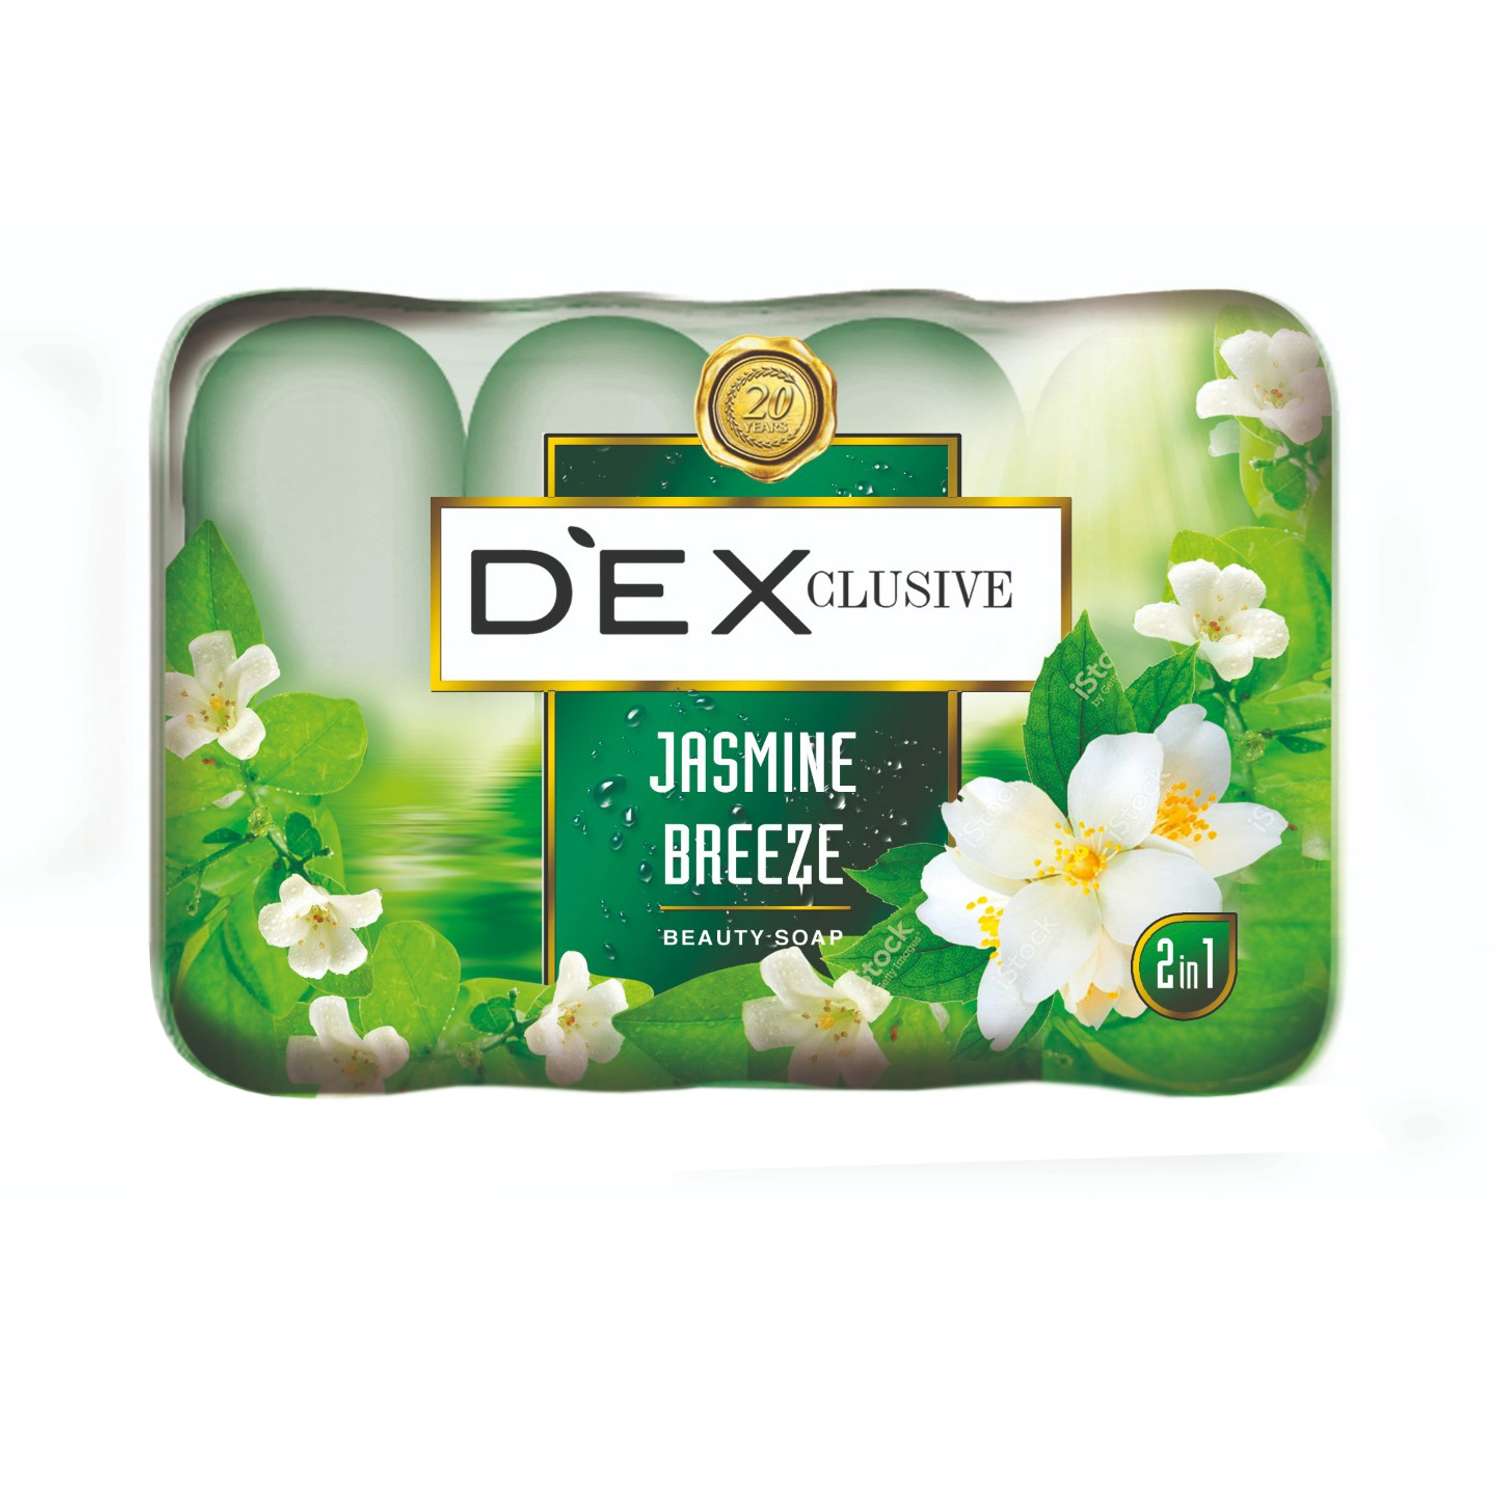 Мыло туалетное твёрдое Dexclusive jasmine breeze 2 в 1 4шт по 90 гр - фото 1